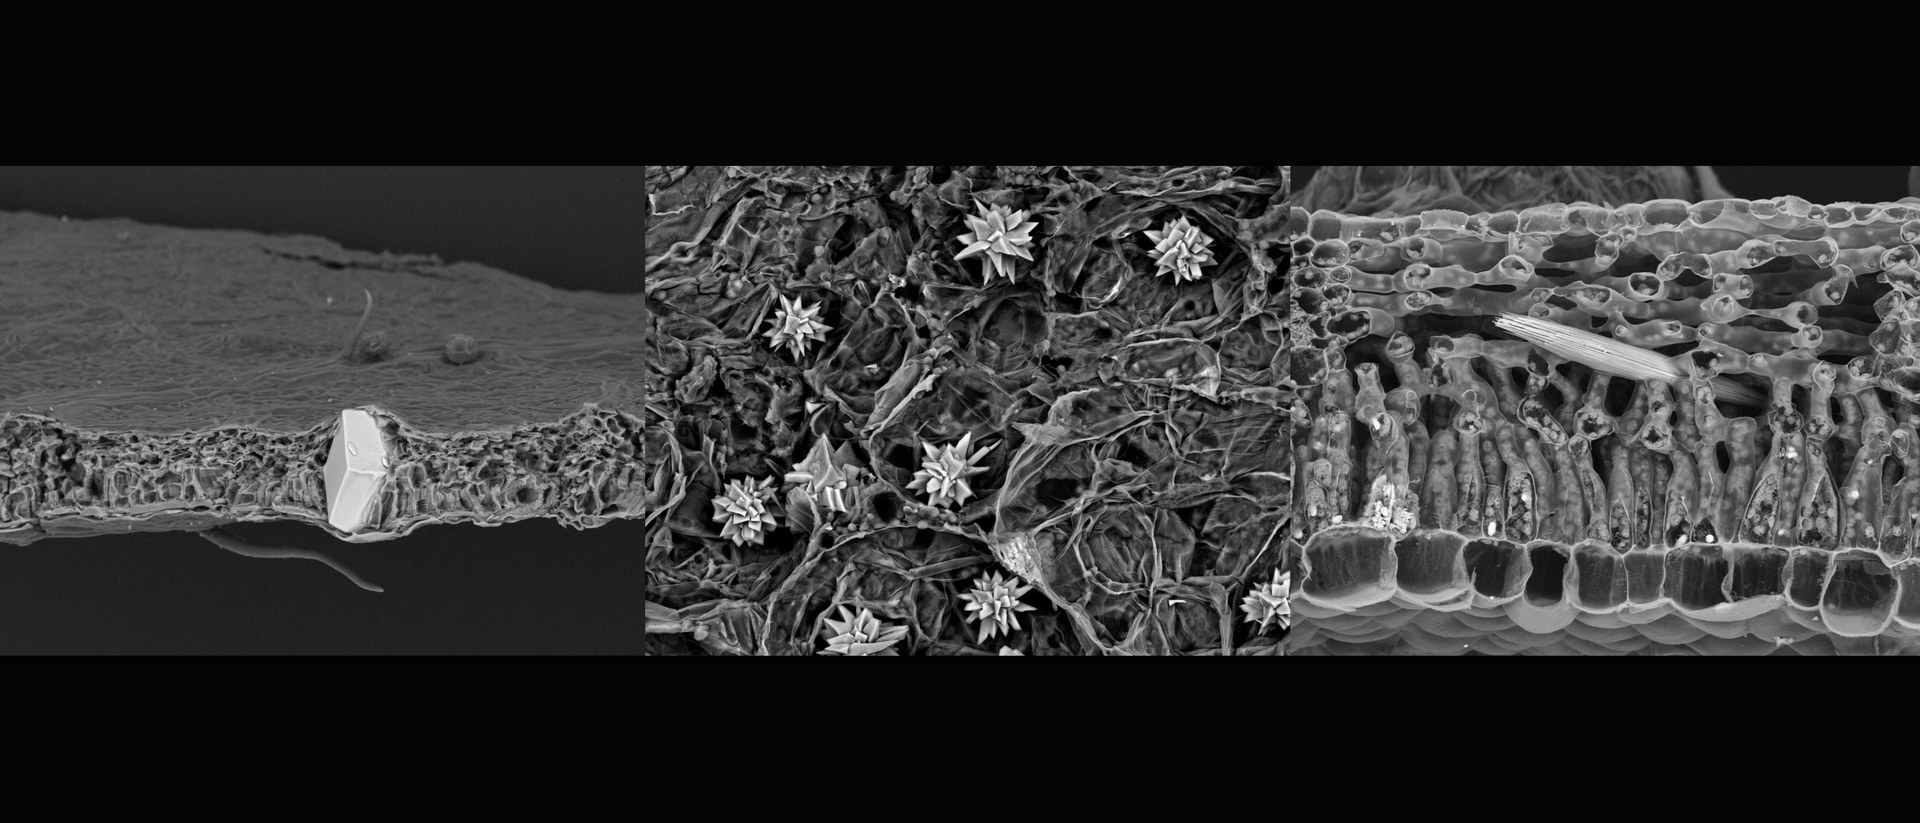 In lebenden Pflanzen können Kalziumoxalat-Kristalle unter dem Mikroskop bizarre Formen annehmen (v. links: Hainbuche, Knopfmangrove, australische Brennnessel)